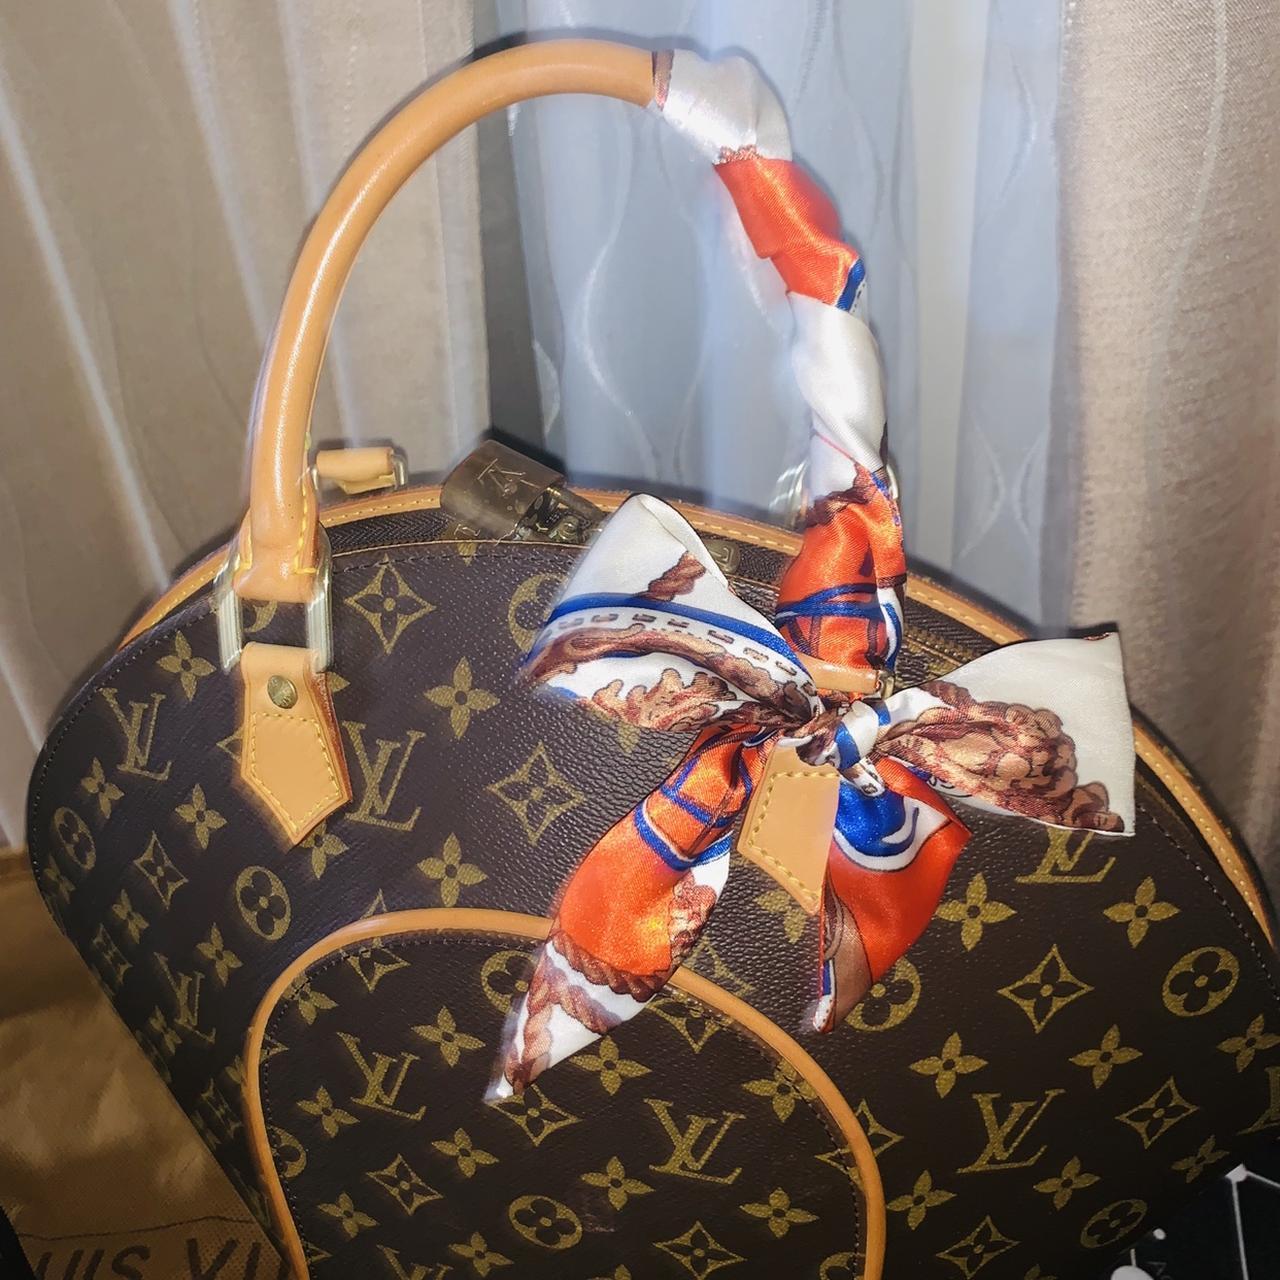 Louis Vuitton Handbag Louis Vuitton Ellipse Pm - Depop